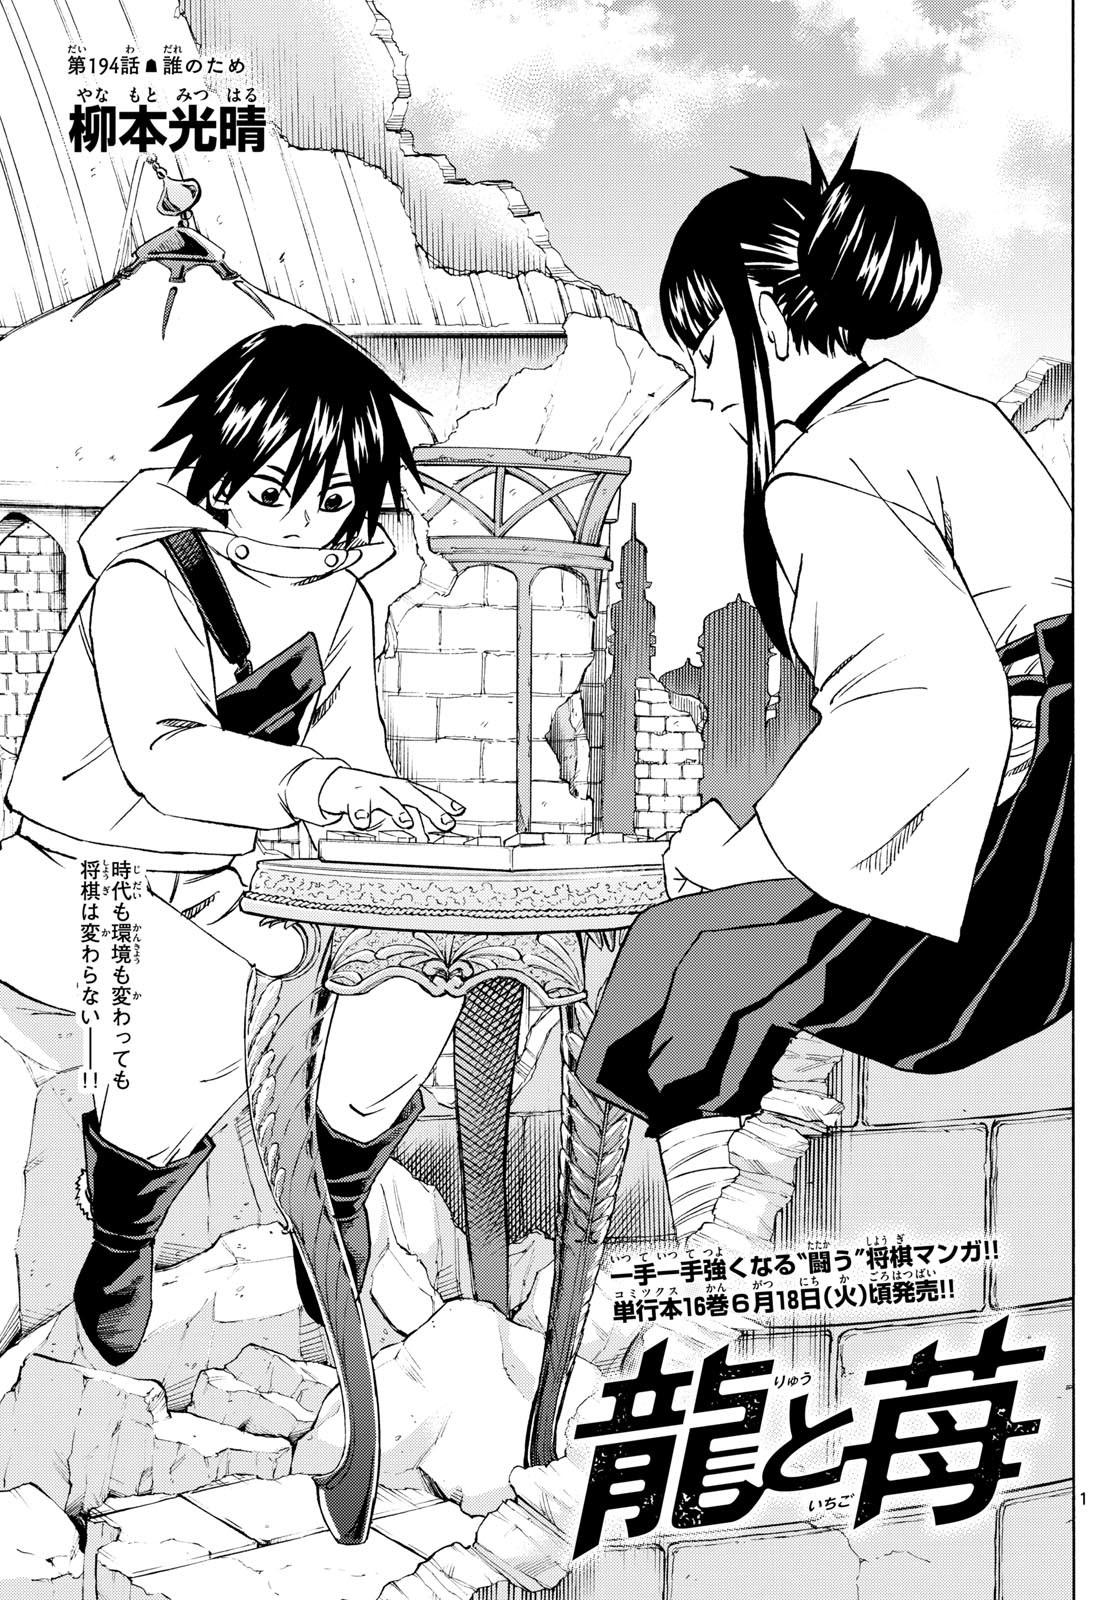 Ryu-to-Ichigo - Chapter 194 - Page 1